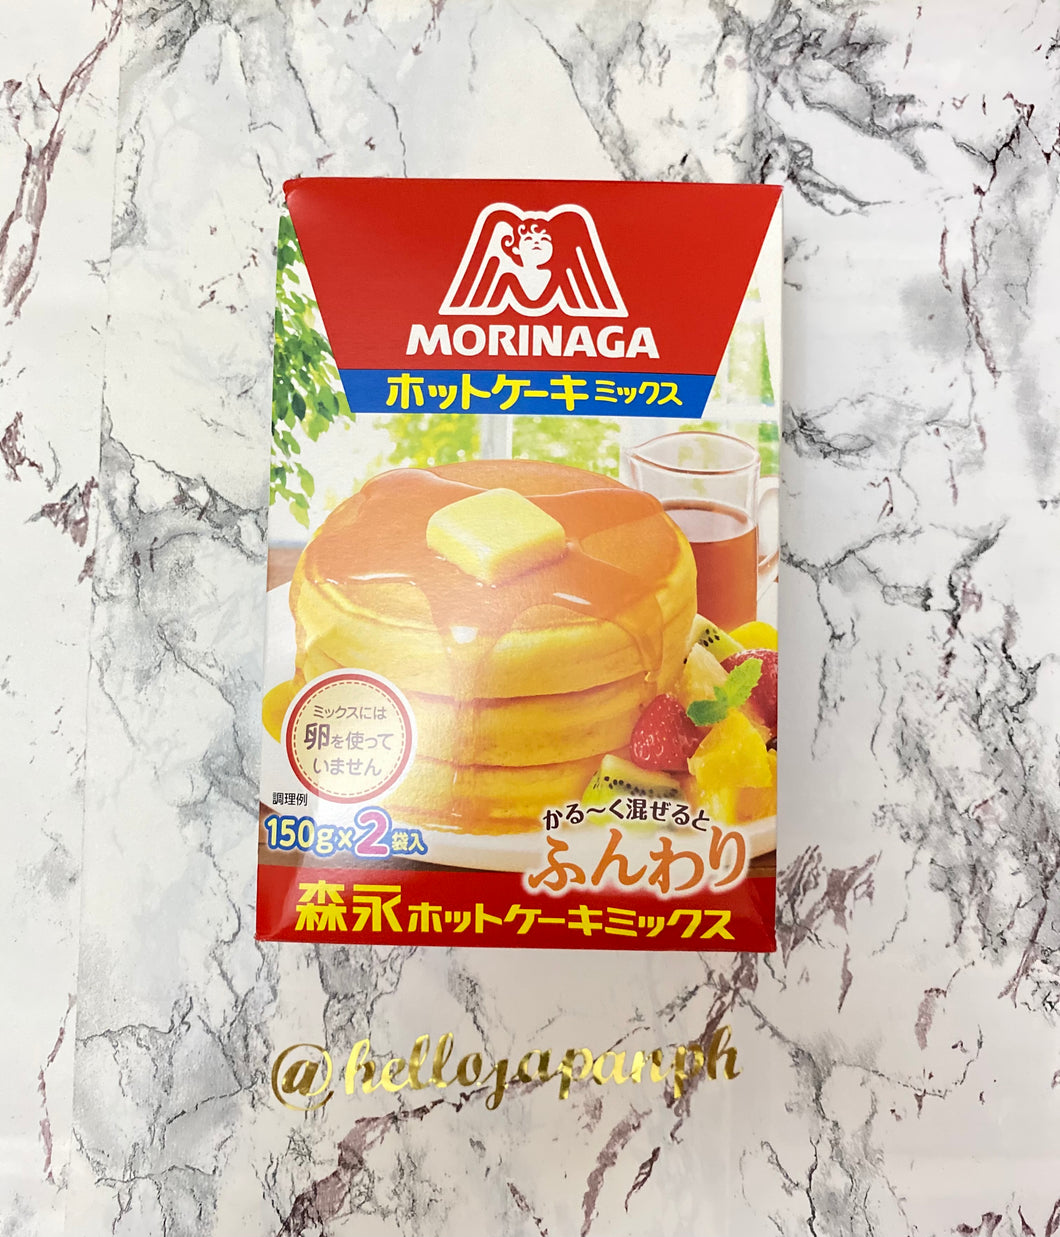 Morinaga Pancake Mix